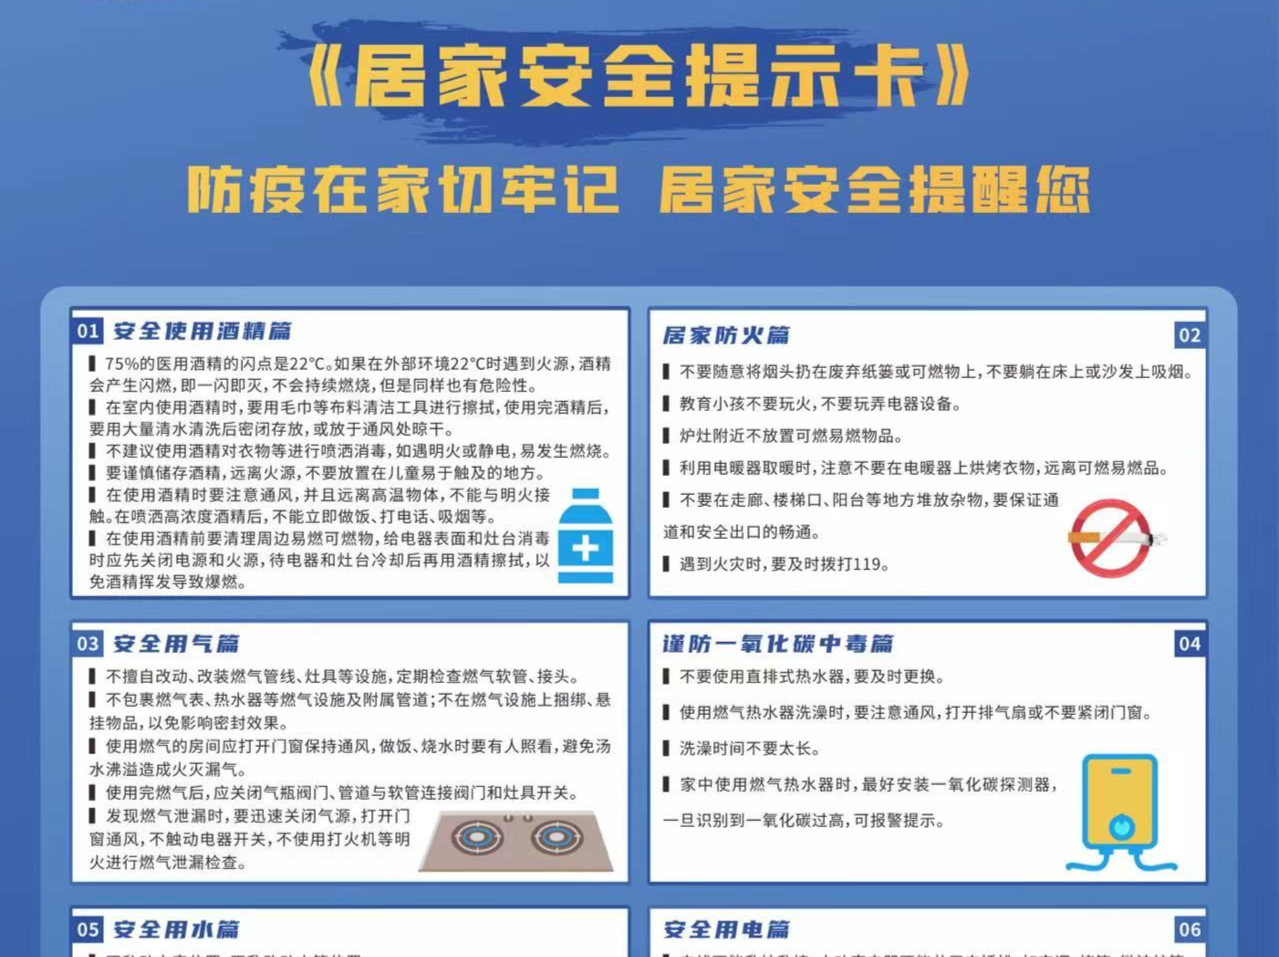 深圳市安委办组织开展安全宣传进社区、进家庭活动